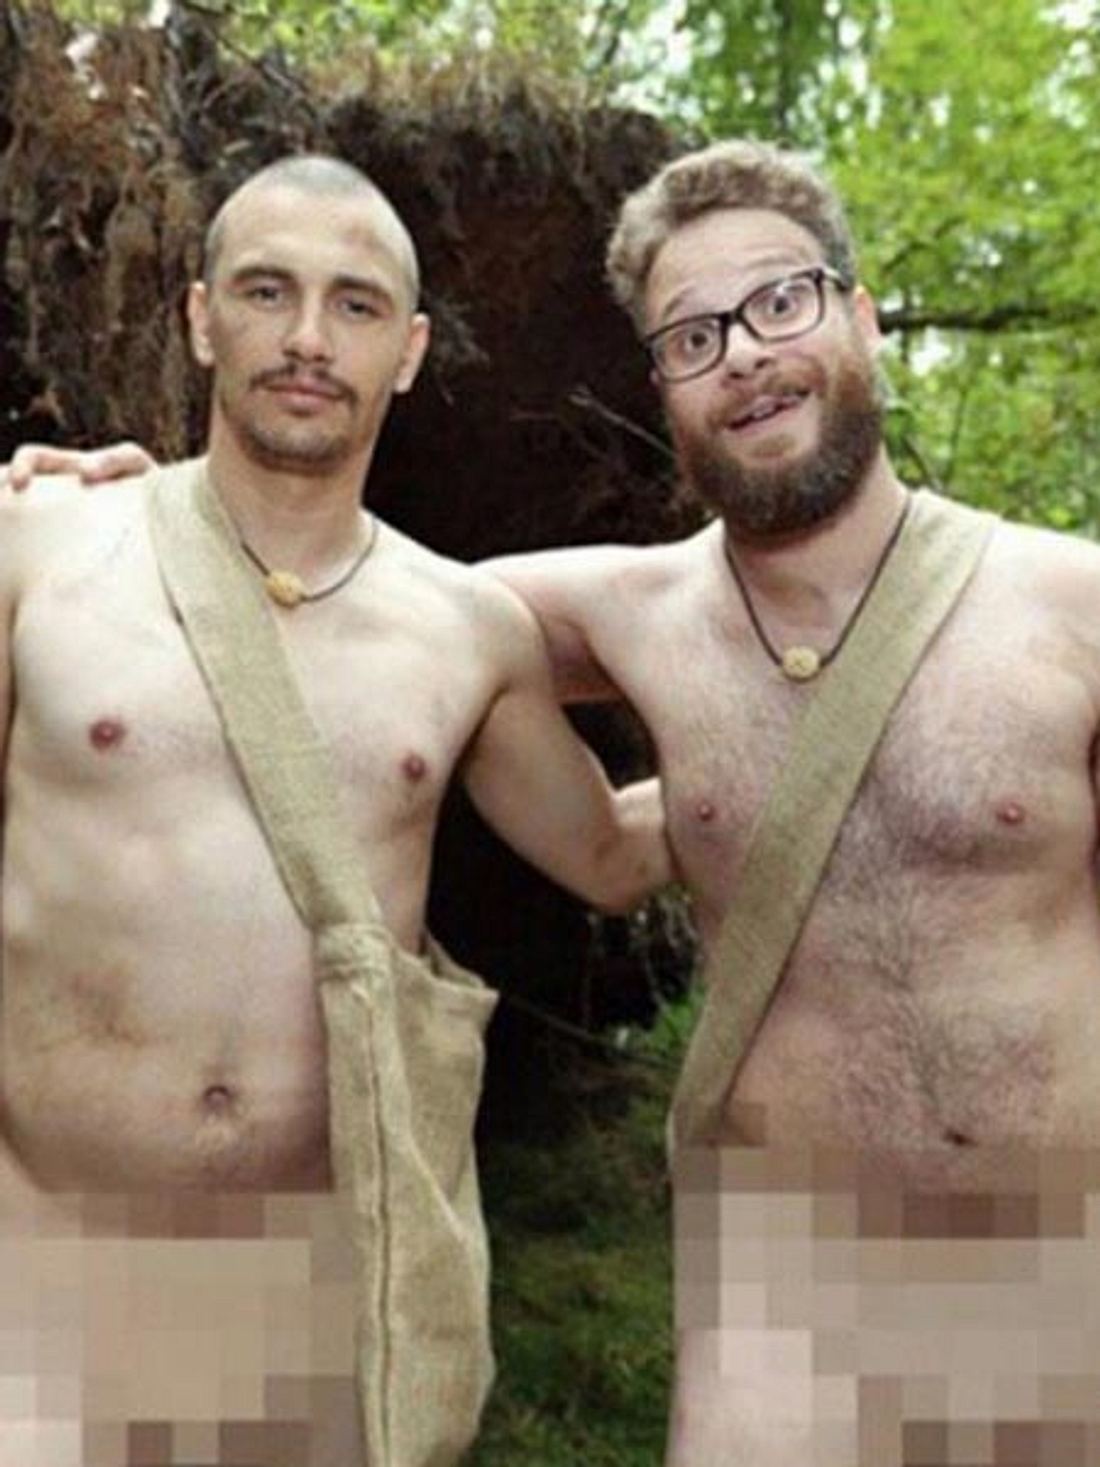 Männer nackt im Wald. Genau die Kragenweite der beiden Anarcho-Buddies